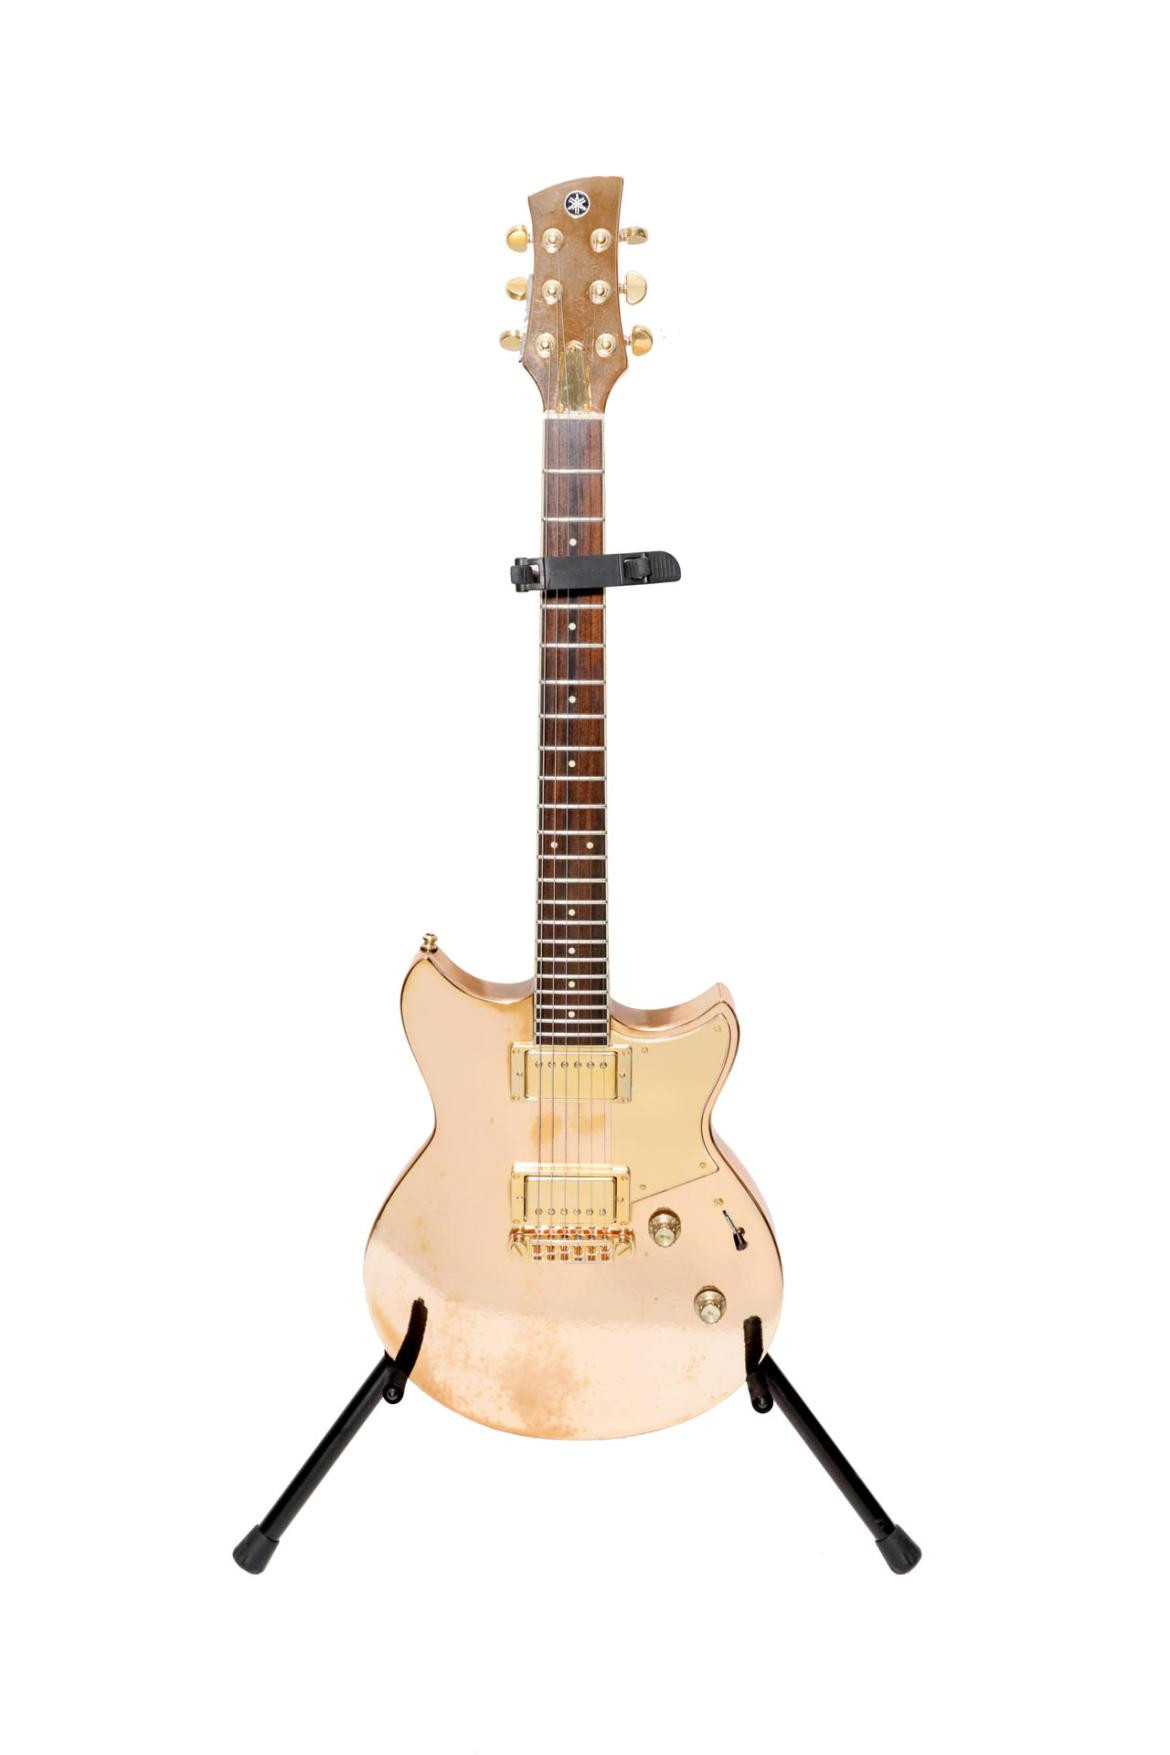 Guitarra eléctrica Yamaha Revstar dorada usada por Shakira en la gira El Dorado y que será expuesta en la exposición 